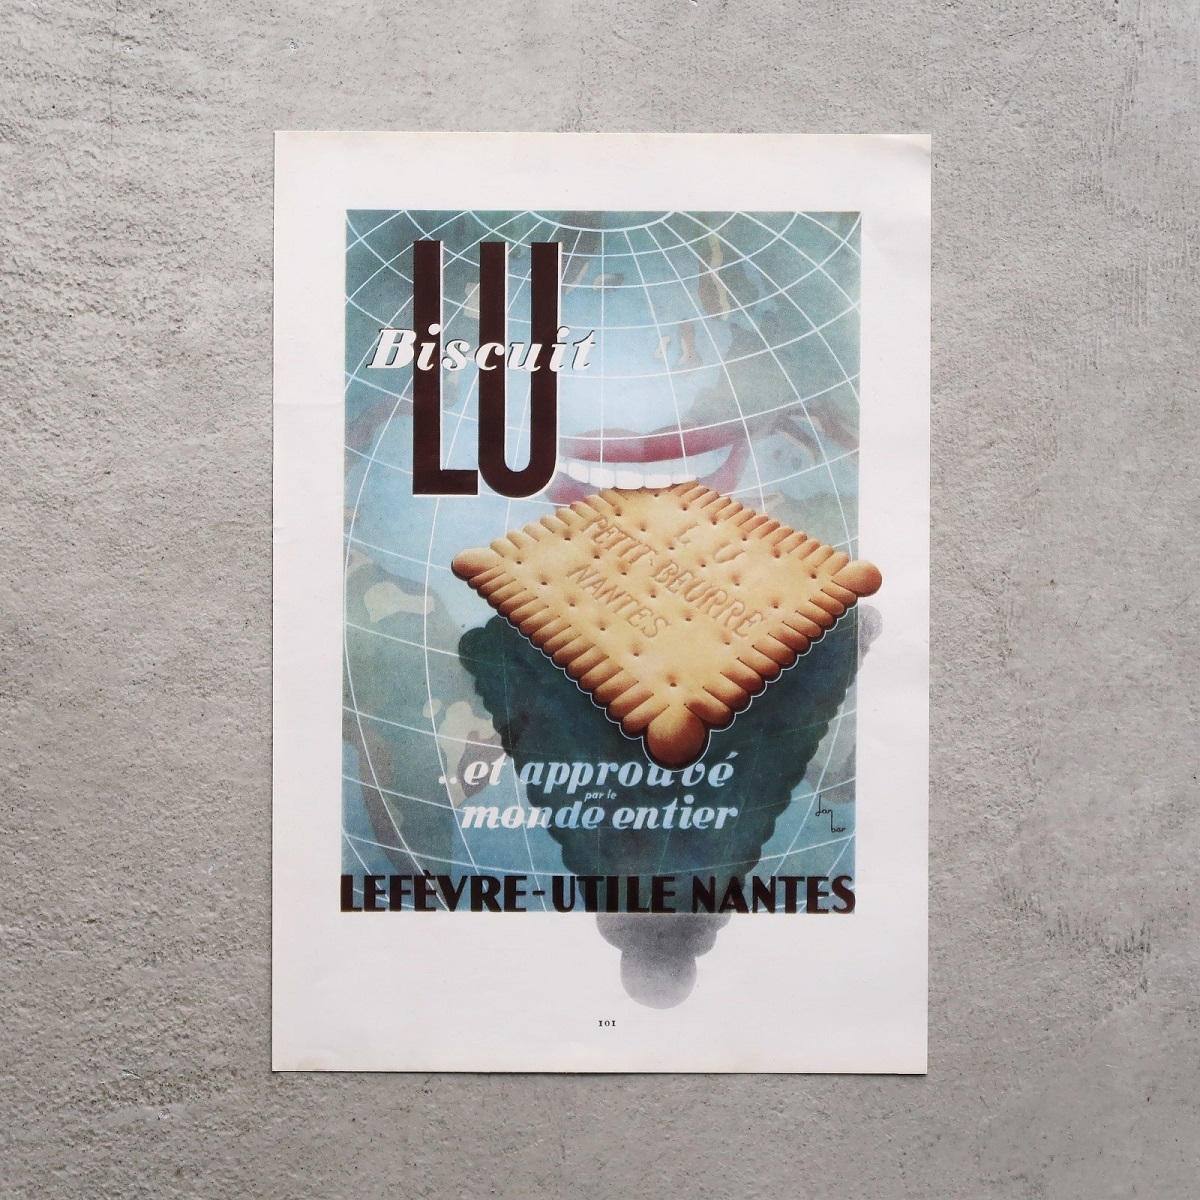 LEFEVRE-UTILE LU リュ 1950年 ビスケット フランス ヴィンテージ 広告 アンティーク コレクション インテリア フレンチ ポスター 稀少_画像1